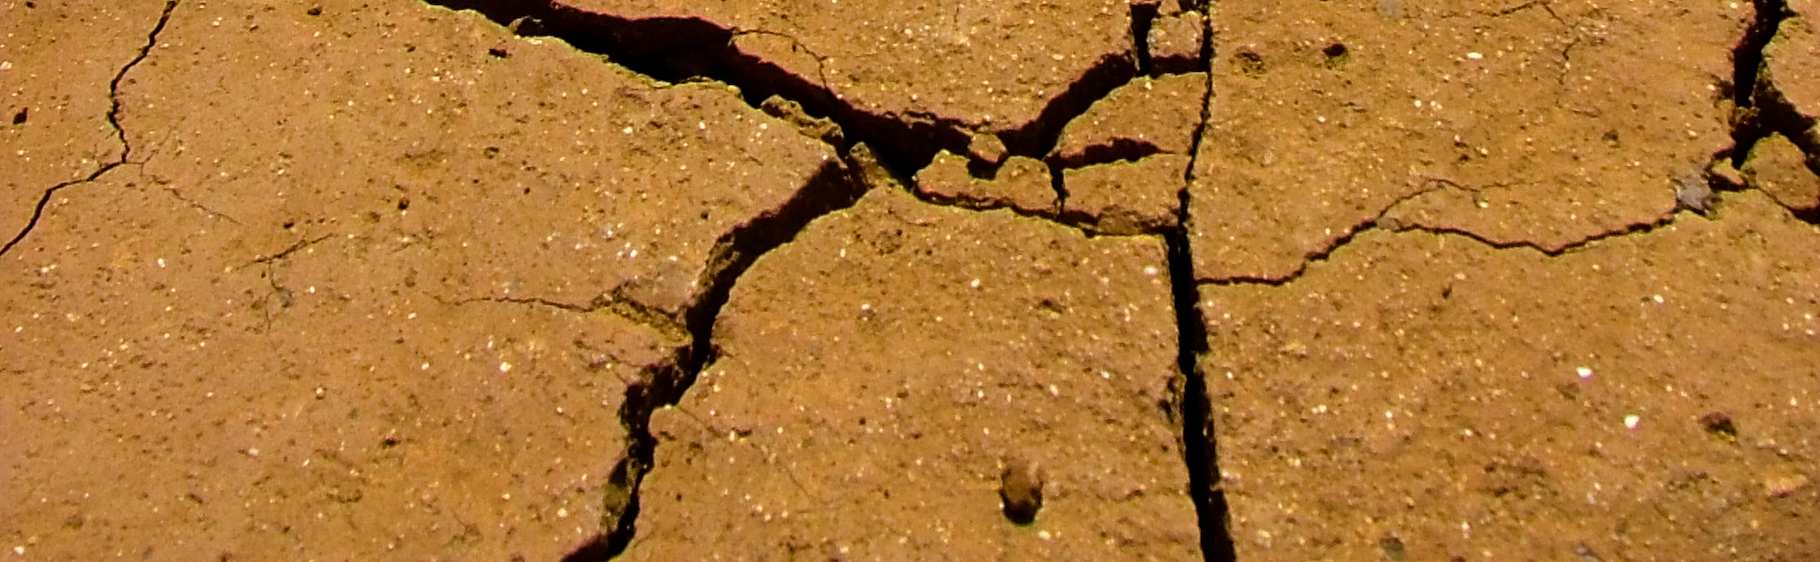 αποτελούν ένα σηµαντικό και αυξανόµενο κίνδυνο. Στα προηγούµενα χρόνια, οι ξηρασίες είχαν κατά µέσο όρο αποτέλεσµα ζηµίας της τάξης των 6 δισεκατοµµυρίων Ευρώ για τις χώρες της ΕΕ.